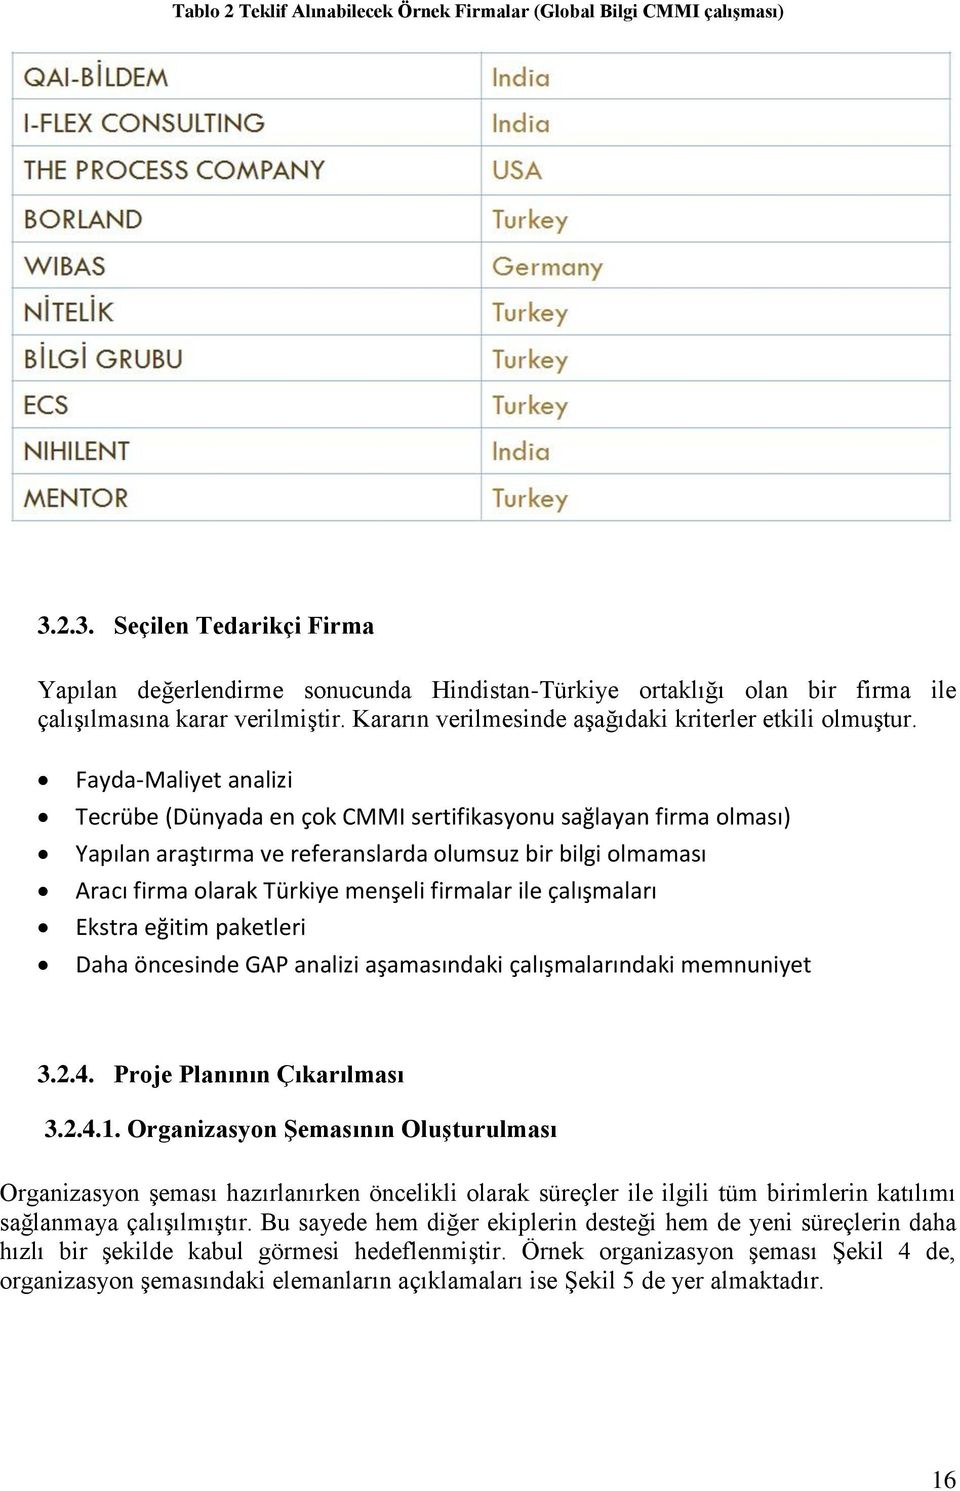 Fayda-Maliyet analizi Tecrübe (Dünyada en çok CMMI sertifikasyonu sağlayan firma olması) Yapılan araştırma ve referanslarda olumsuz bir bilgi olmaması Aracı firma olarak Türkiye menşeli firmalar ile